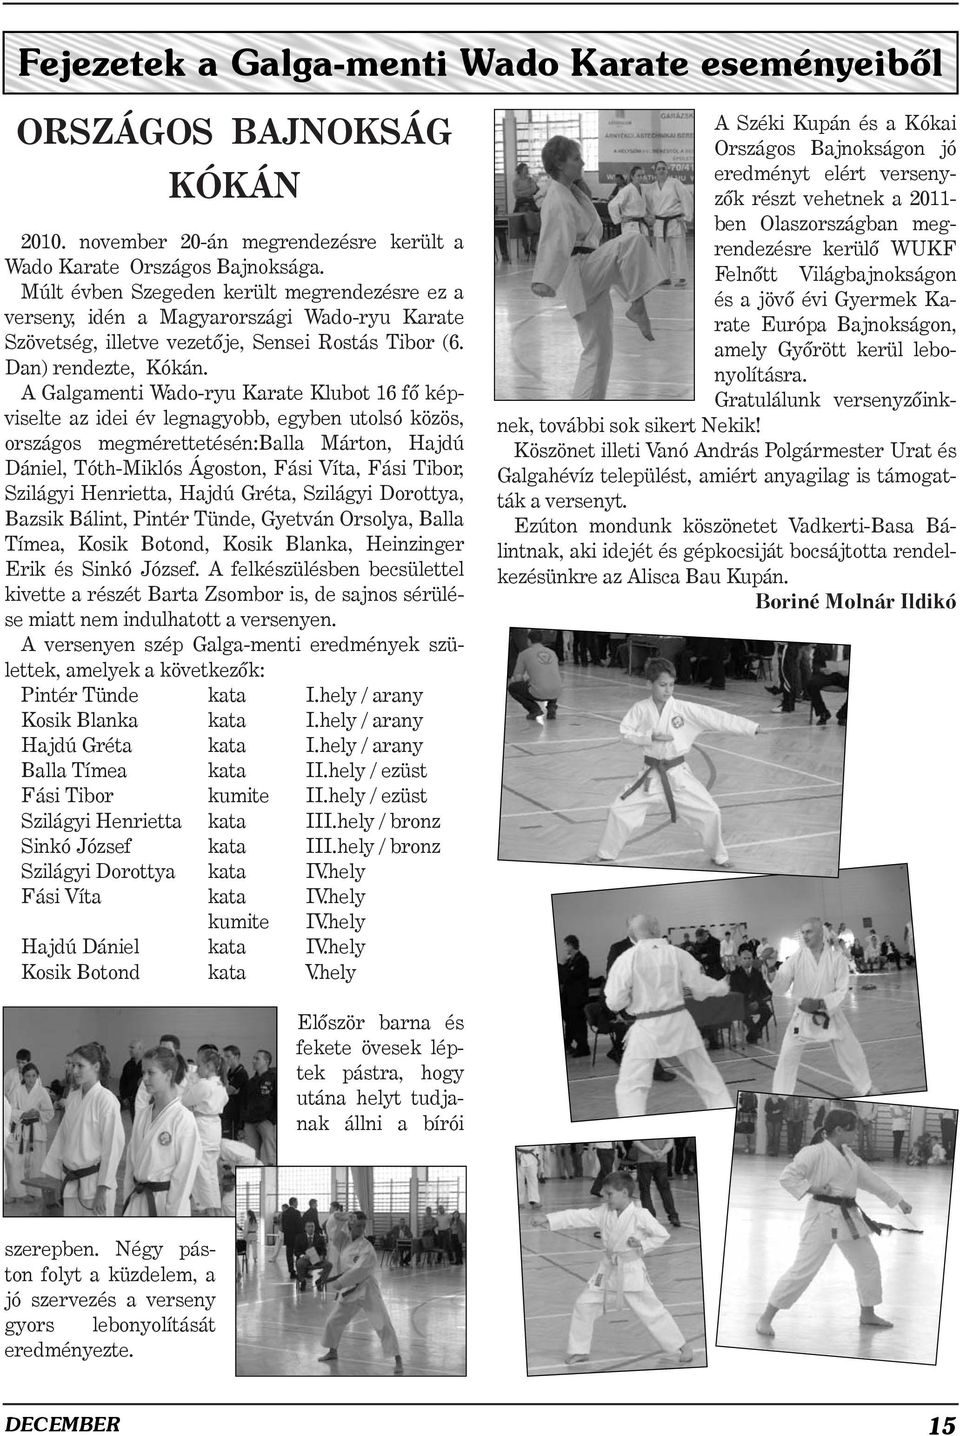 A Galgamenti Wado-ryu Karate Klubot 16 fõ képviselte az idei év legnagyobb, egyben utolsó közös, országos megmérettetésén:balla Márton, Hajdú Dániel, Tóth-Miklós Ágoston, Fási Víta, Fási Tibor,